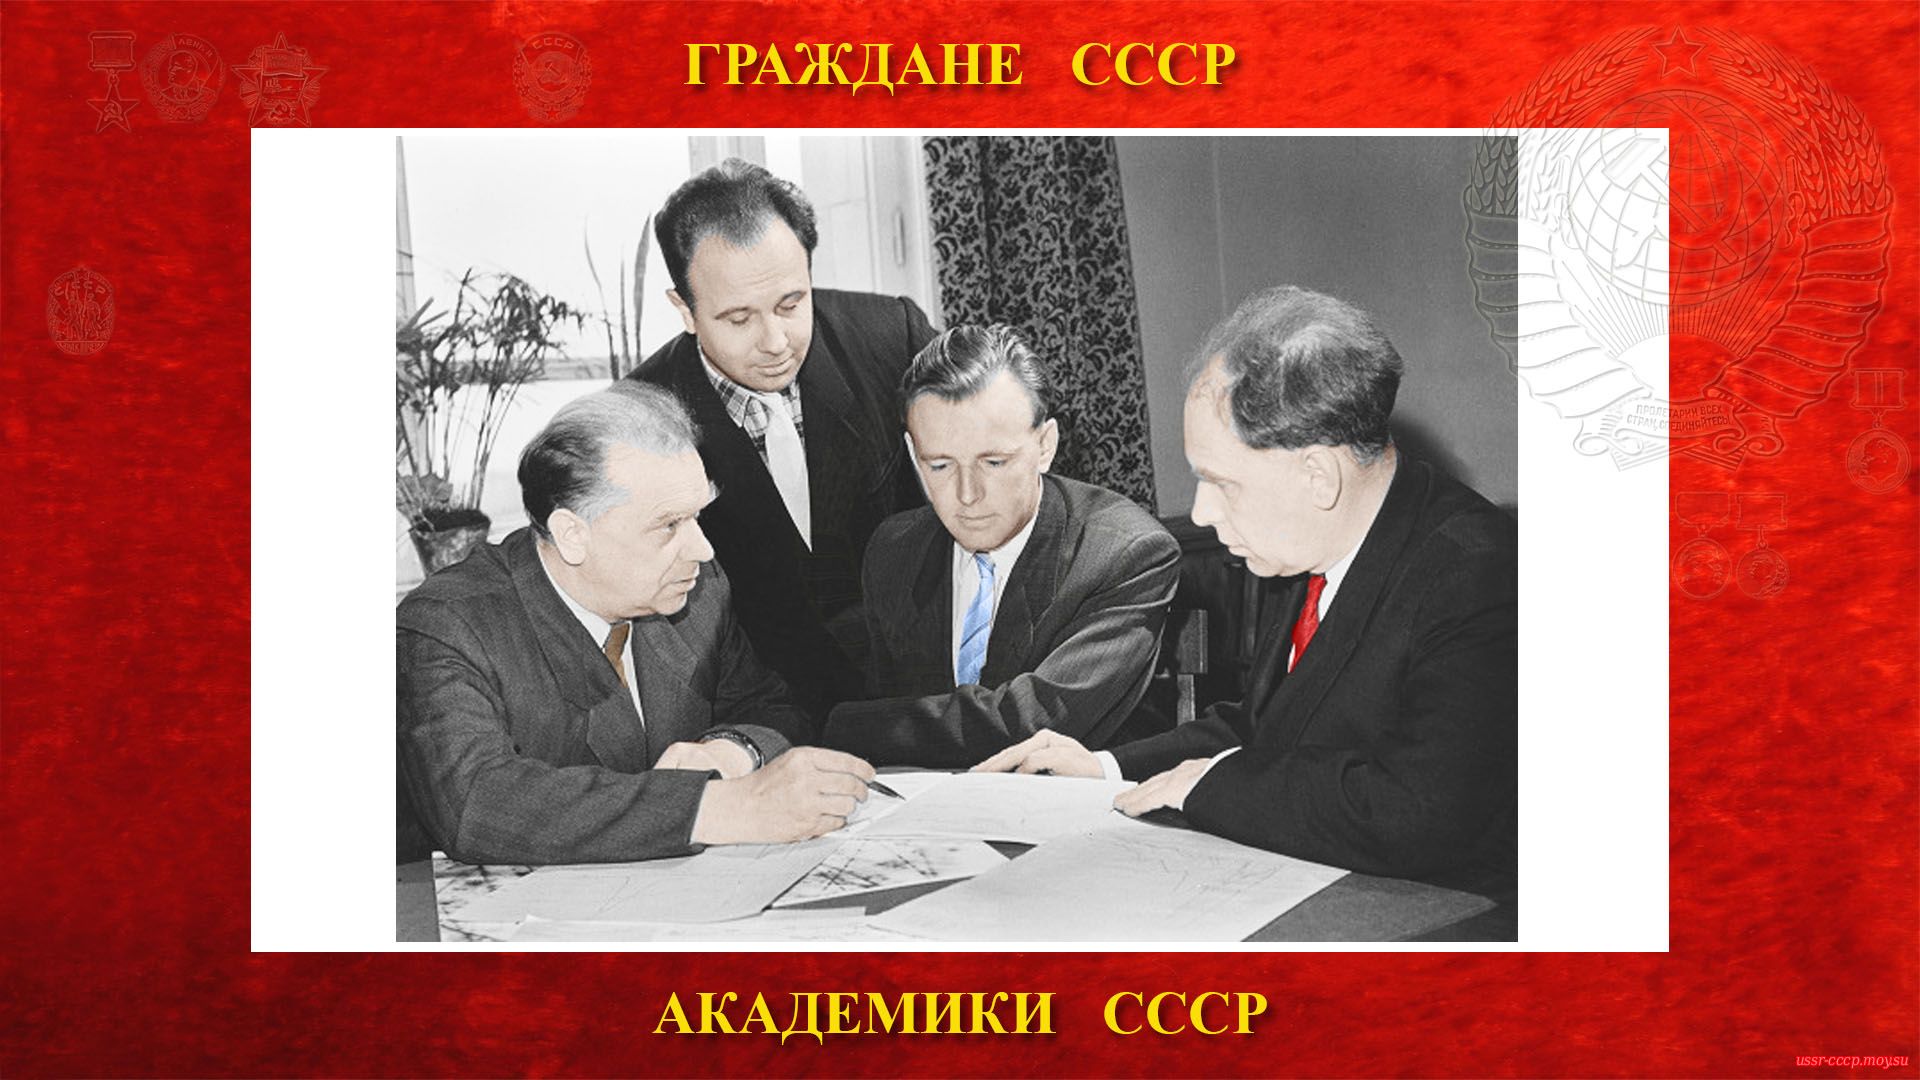 Слева направо: С.С. Васильев, И.П.Иваненко, Е.А. Романовский, С.Н. Вернов (1961 год).